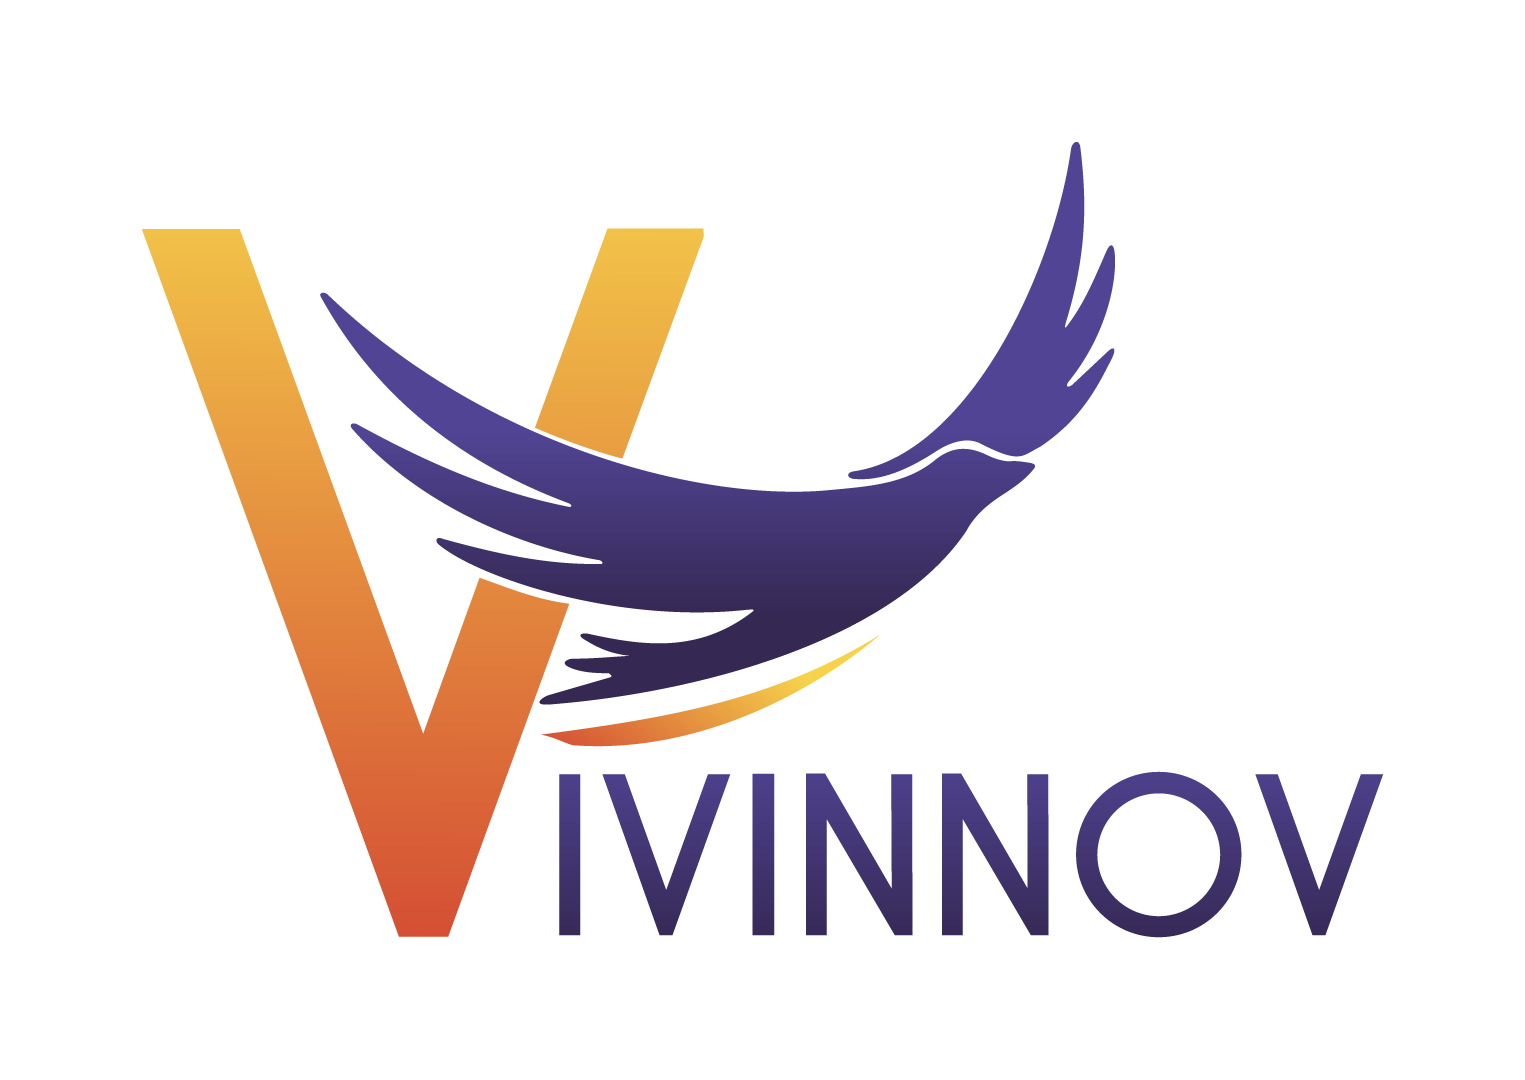 Vivinnov-logo